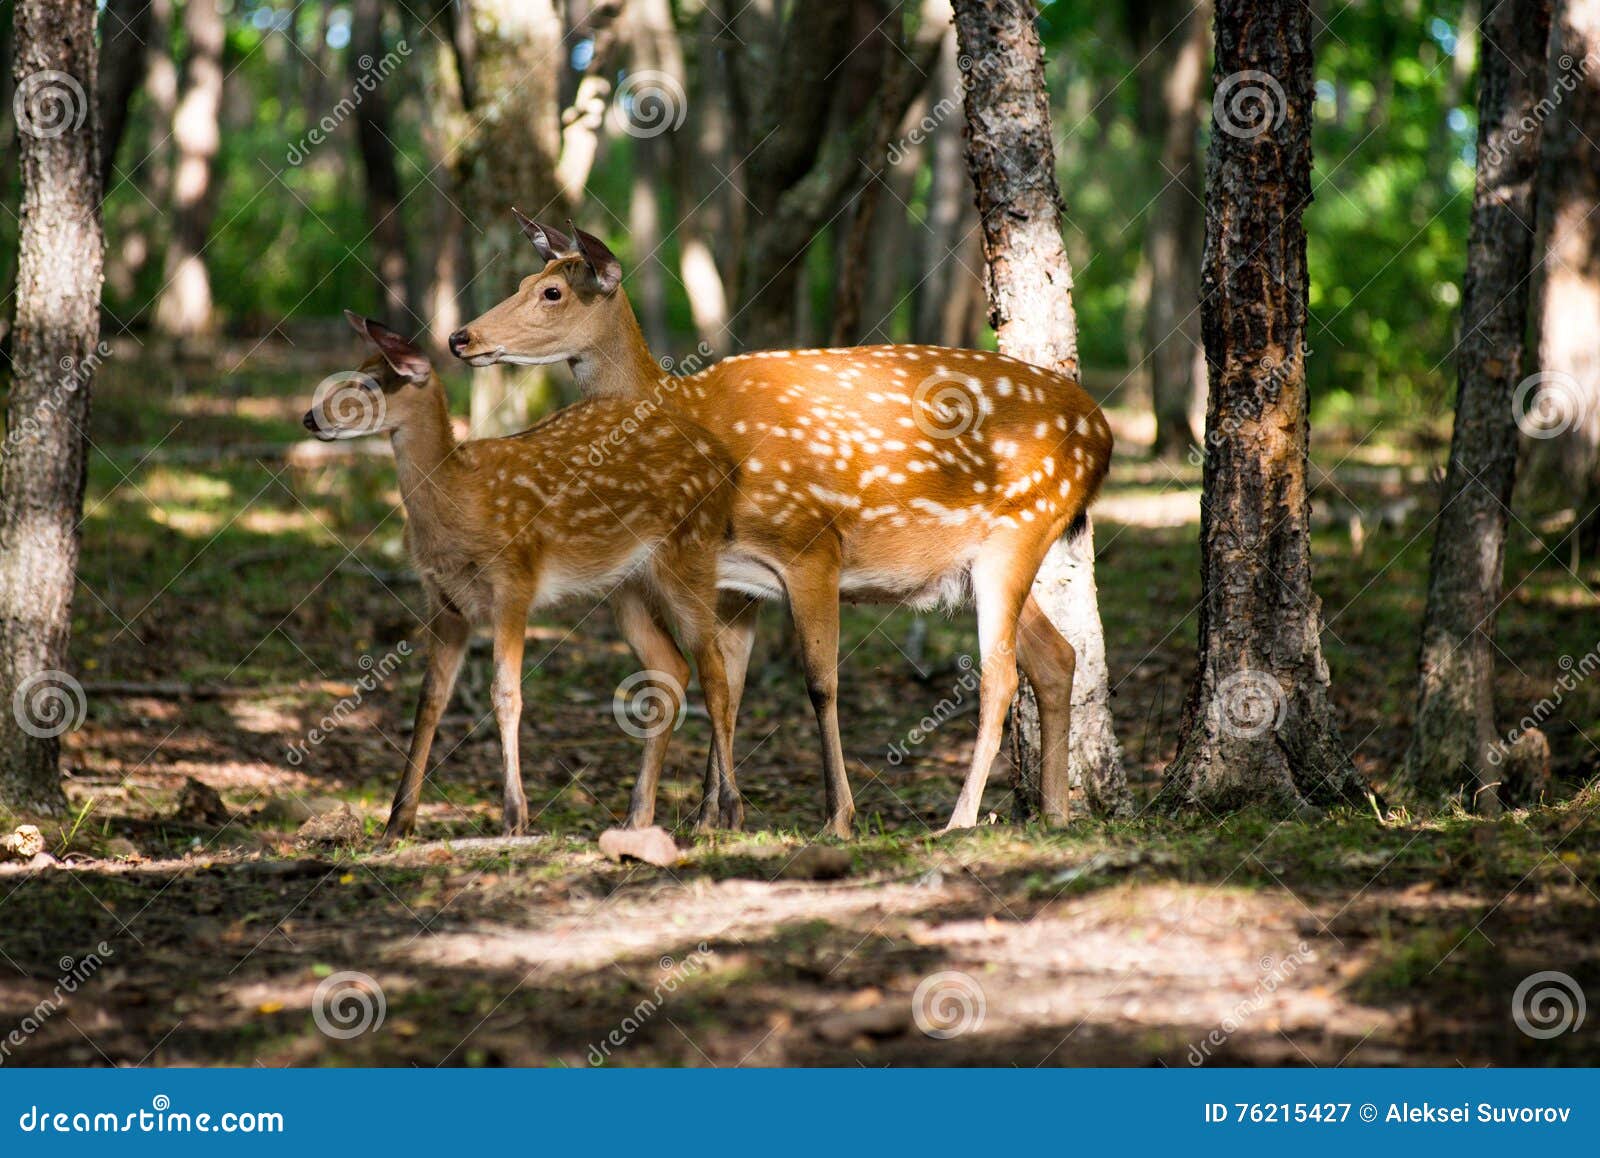 白尾鹿母鹿秋天森林 库存照片. 图片 包括有 母鹿, 风景, 野生生物, 空白, 本质, 垂直, 查找, 伙伴 - 81840082